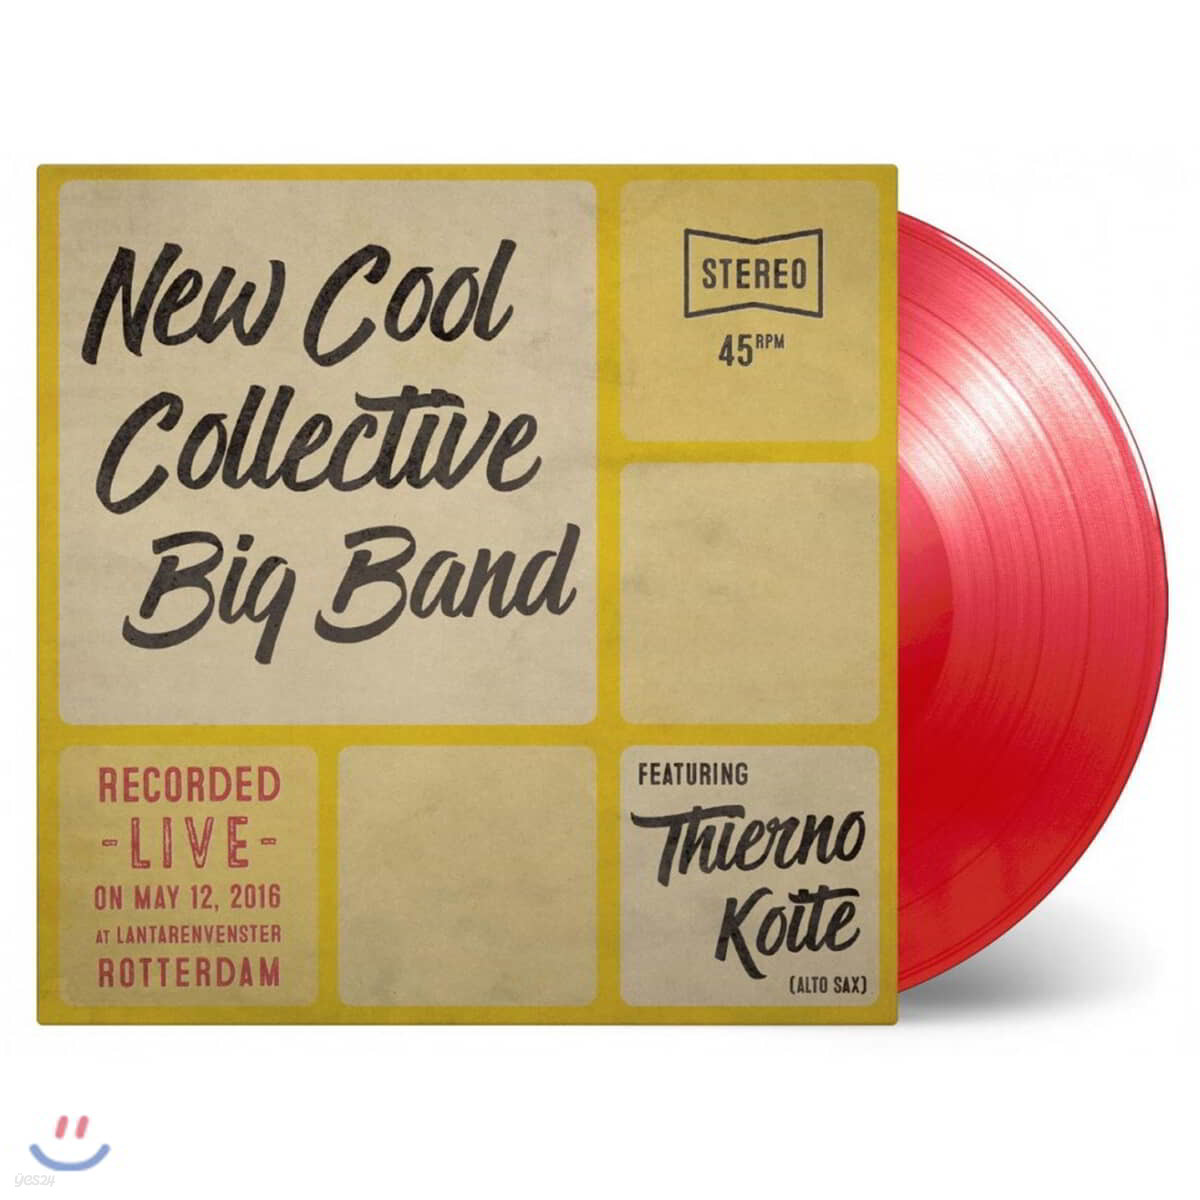 New Cool Collective Big Band & Thierno Koite (뉴 쿨 콜렉티브 빅 밴드 & 티에르노 코이테) - Yassa / Myster Tier [7인치 레드 컬러 LP]